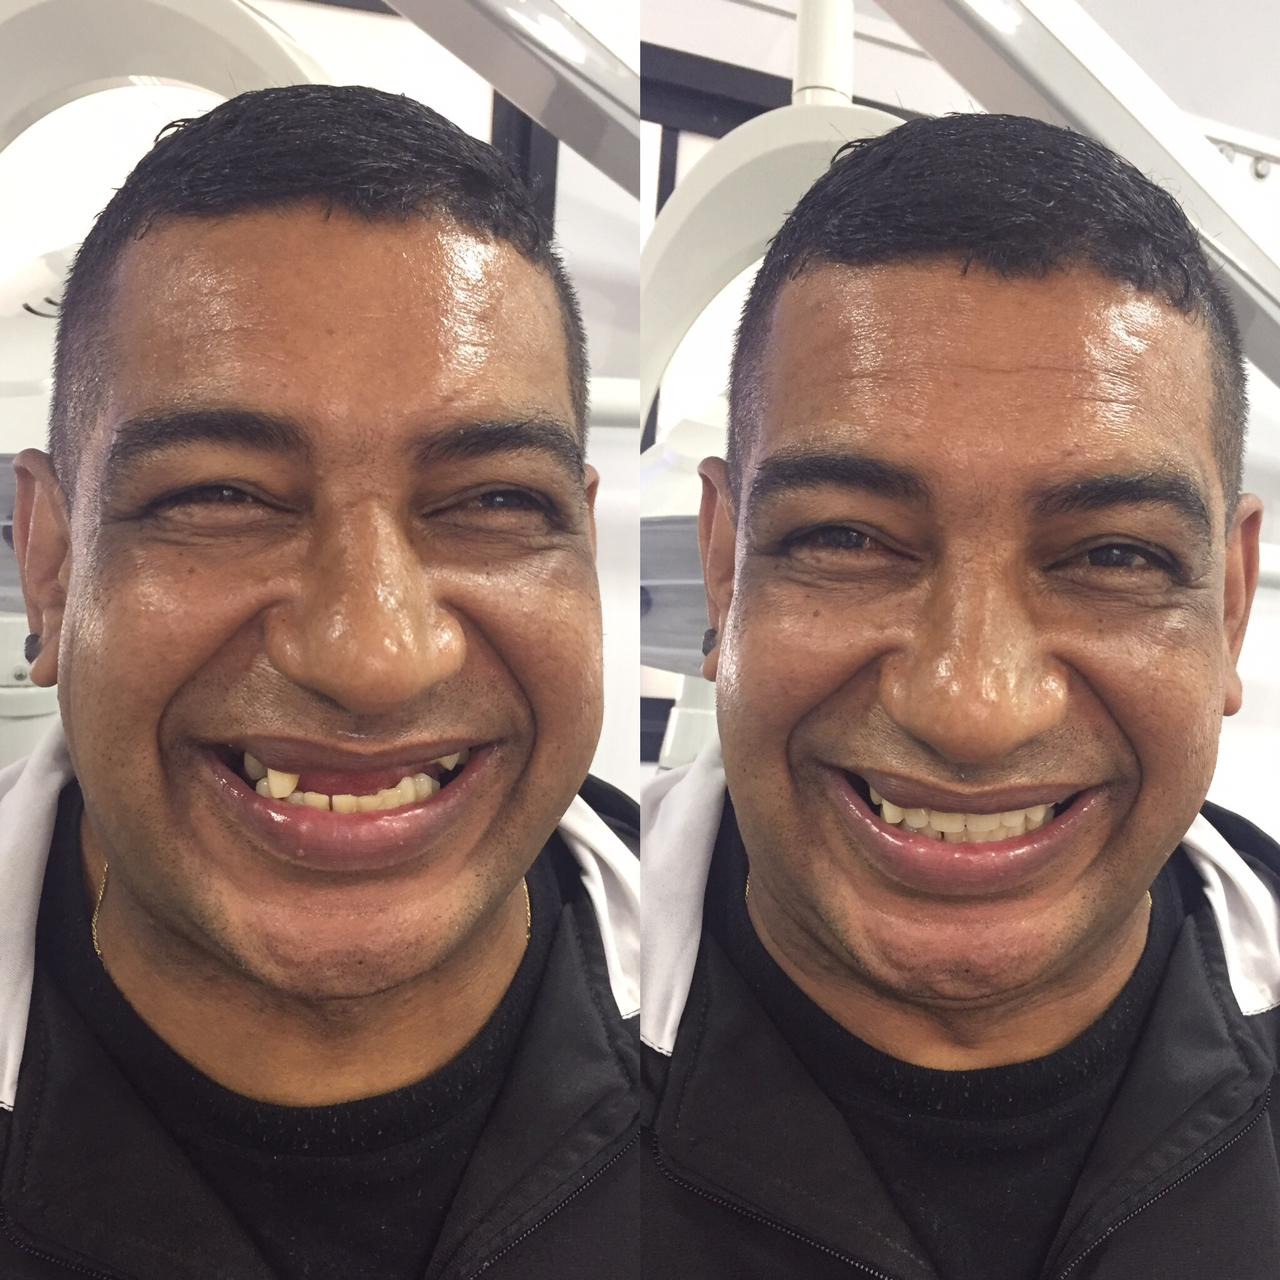 A imagem é um antes e depois do rosto de um homem de pele negra. Na imagem à esquerda ele está sorrindo e na parte superior está sem quatro dentes da frente. Na imagem à direita o mesmo homem está sorrindo mas a diferença é que há os quatro dentes que faltavam no sorriso.